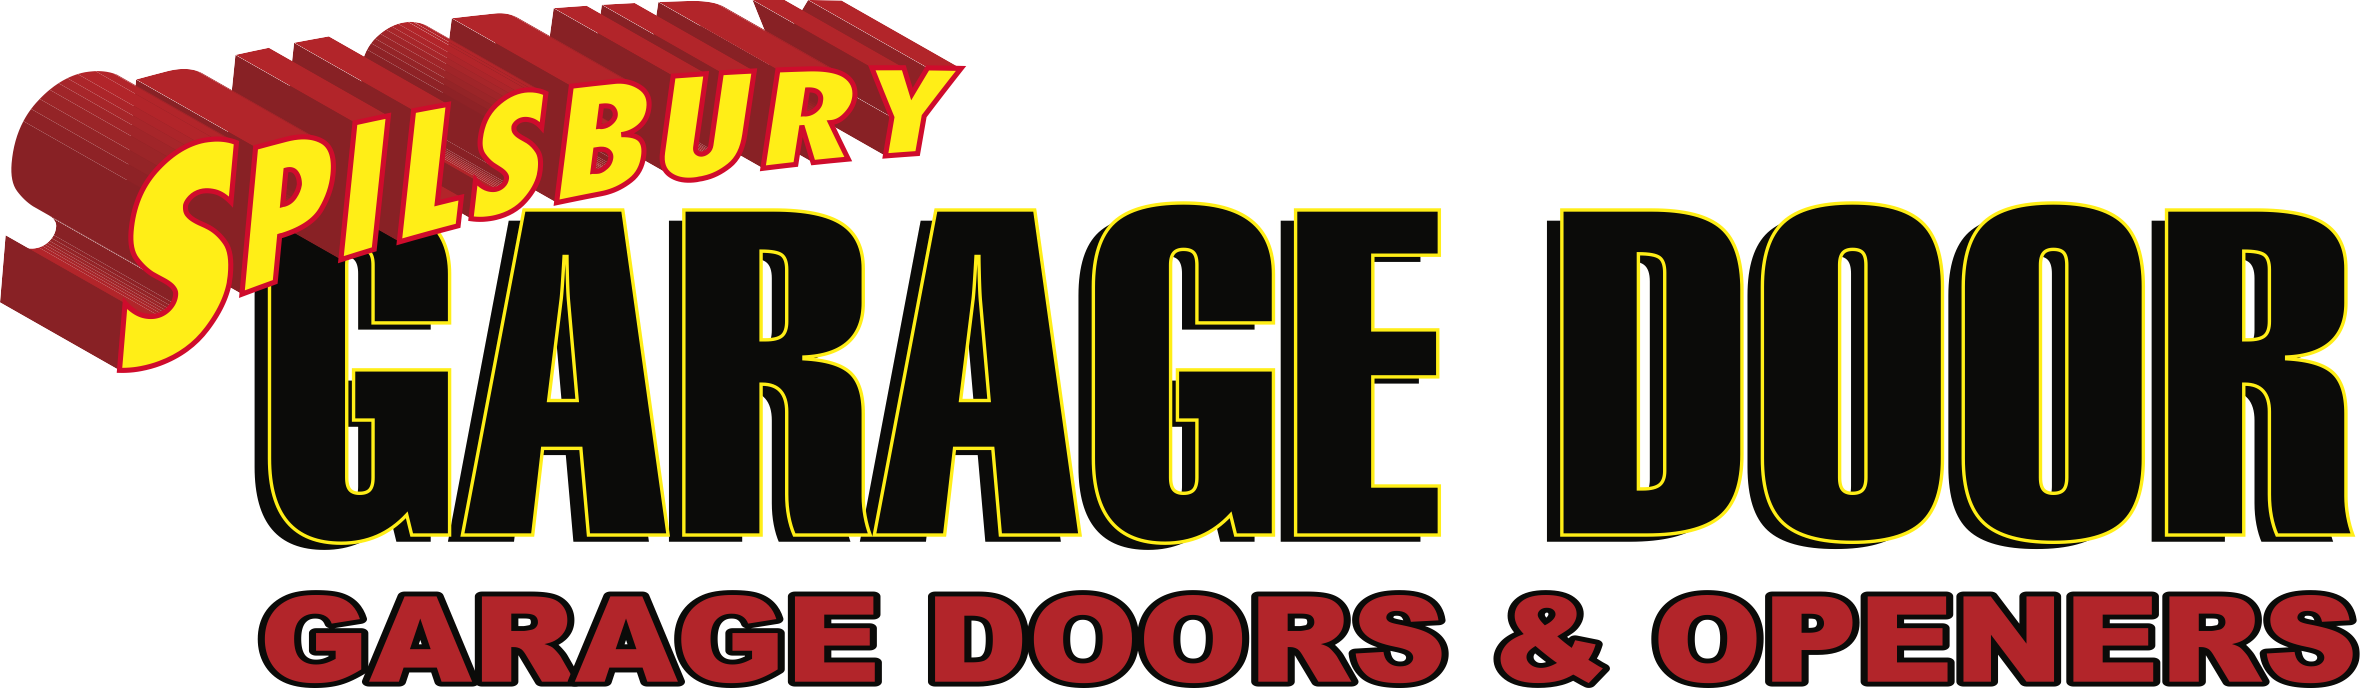 Spilsbury Garage Doors